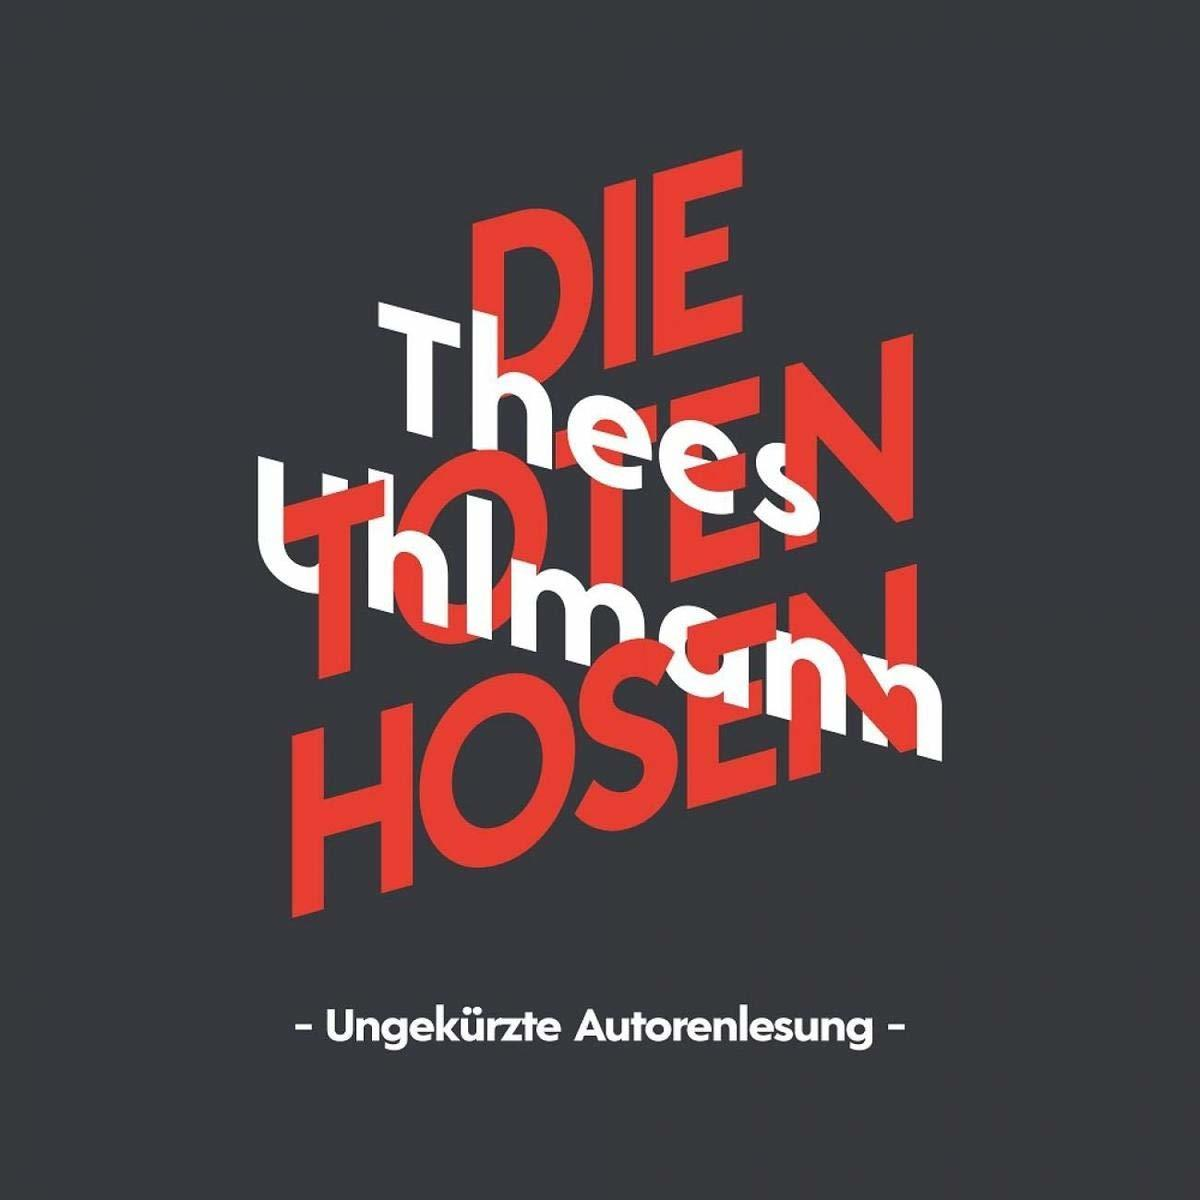 Toten Thees - - Die Hörbuch-uhlmann Hosen (Ungekürzte (CD) Autorenlesung)